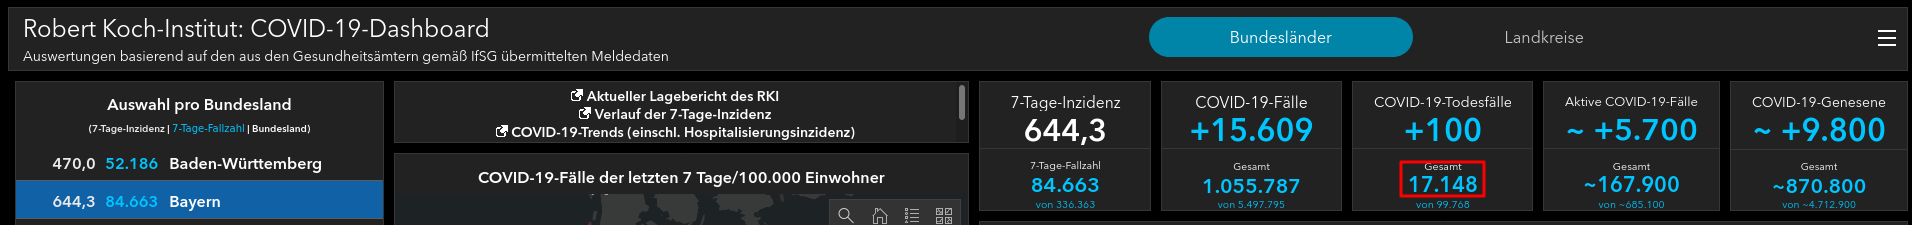 RKI-Dashboard Bayern - Bildquelle: Screenshot-Ausschnitt vom 24.11.2021